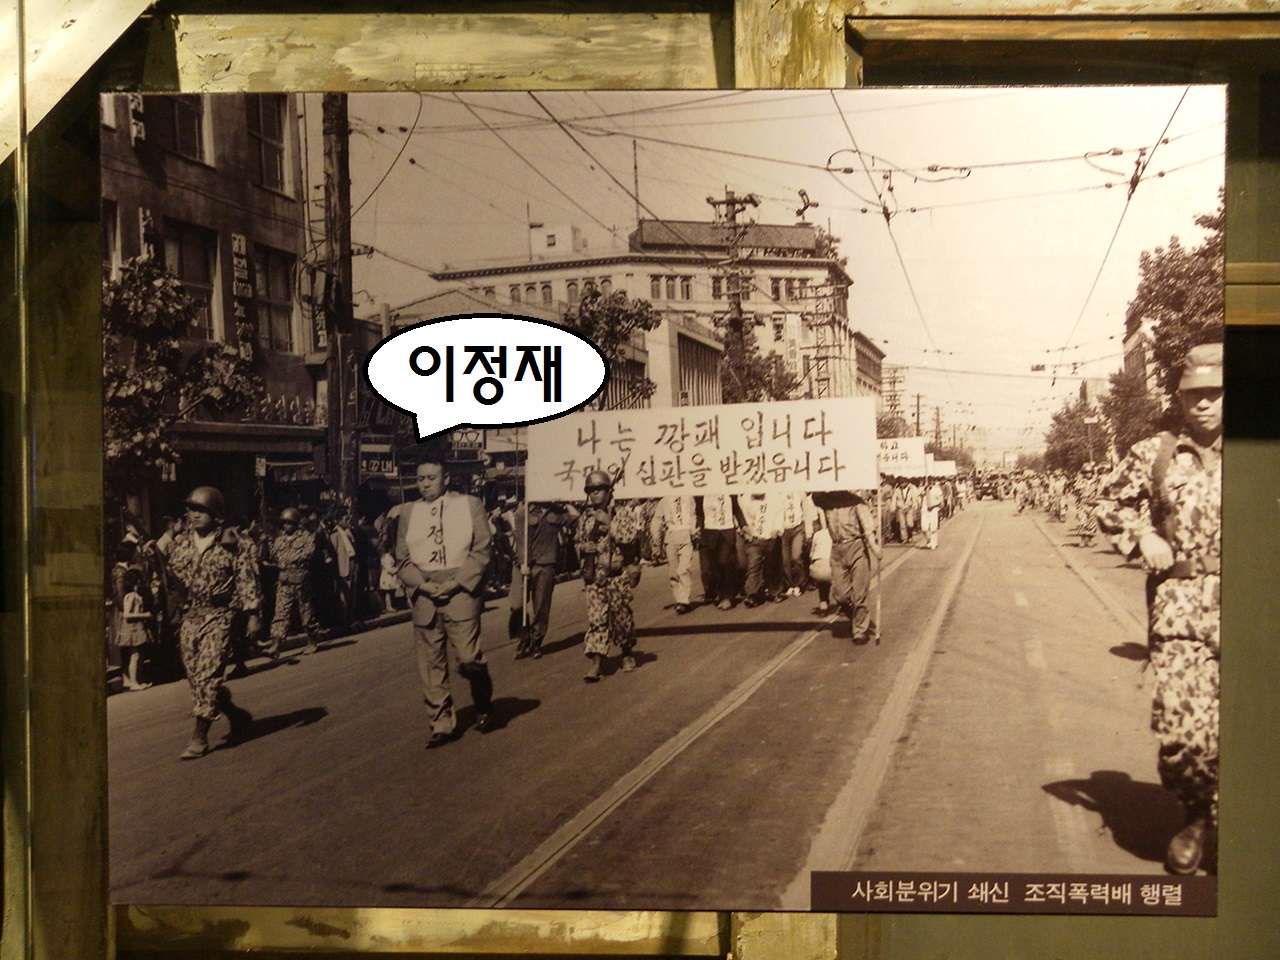 박정희 쿠데타 5일 뒤인 1961년 5월 21일, 군경의 감시 속에 진행된 정치 깡패들의 시가행진. 서울시 마포구 상암동의 박정희대통령기념도서관에서 찍은 사진. 